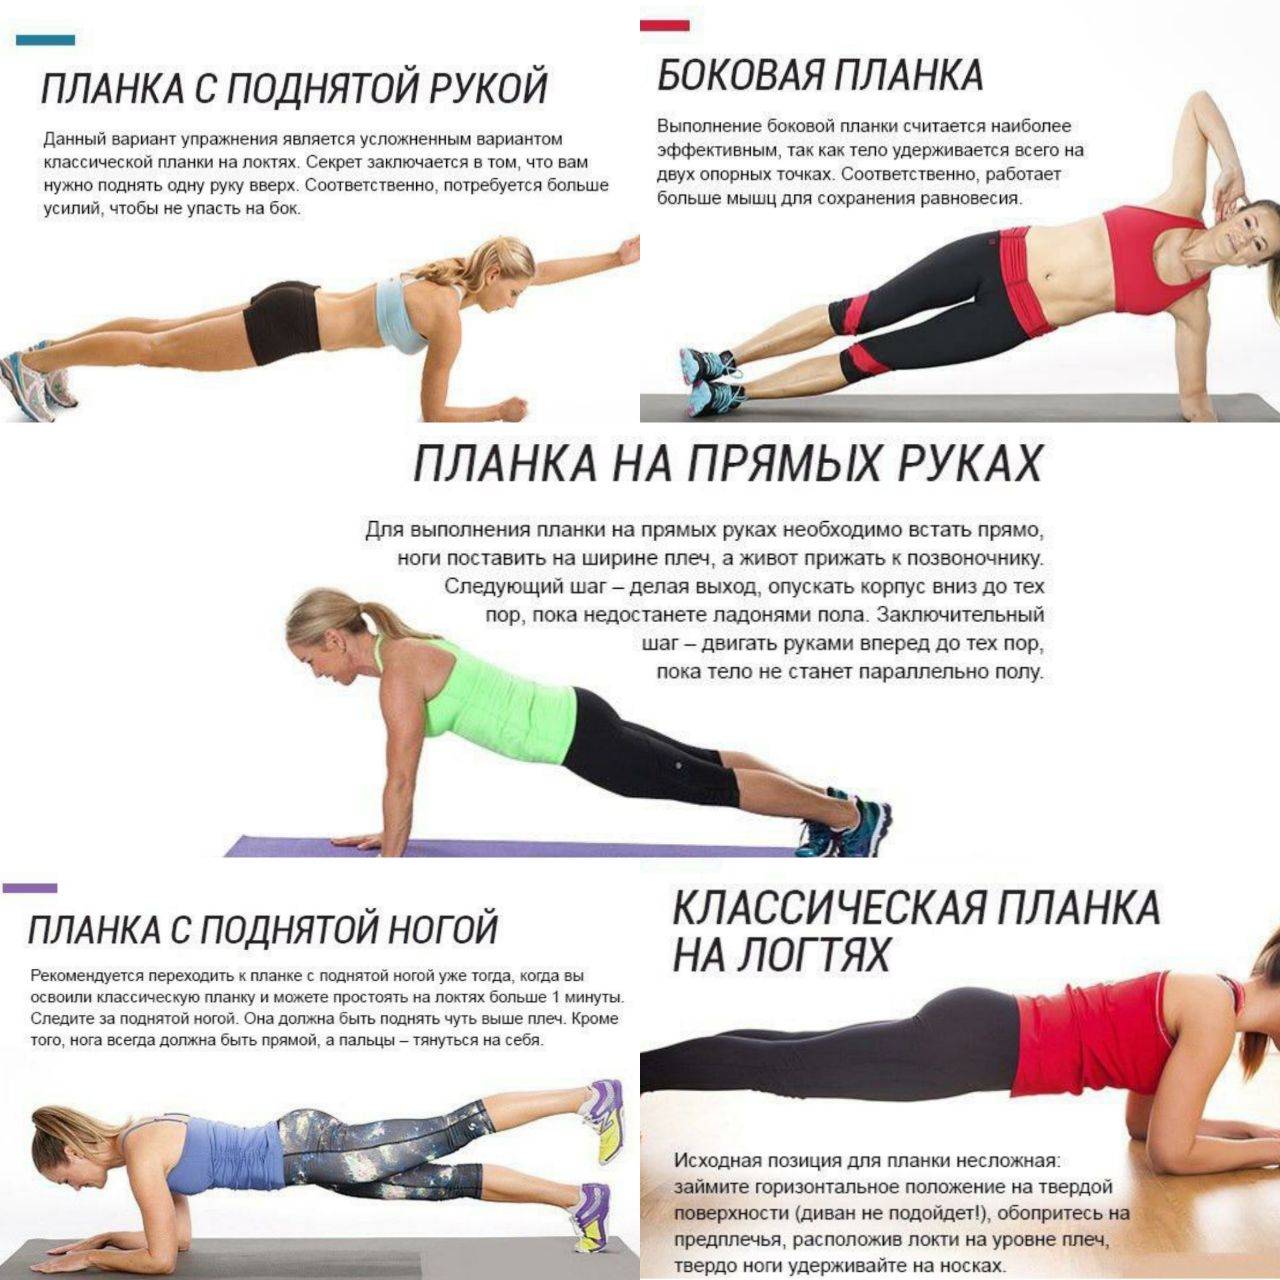 Программы тренировок с упражнением «планка» для плоского живота для начинающих